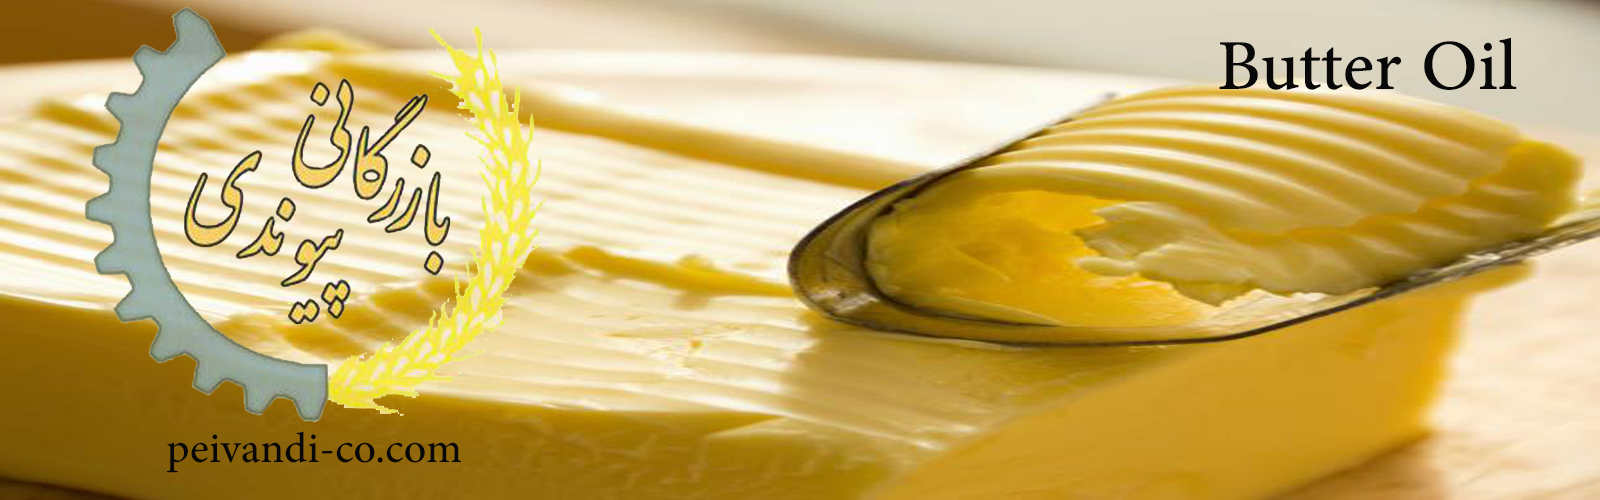 Peyvandi Trading - Butter Oil (Spread , 44 golden)